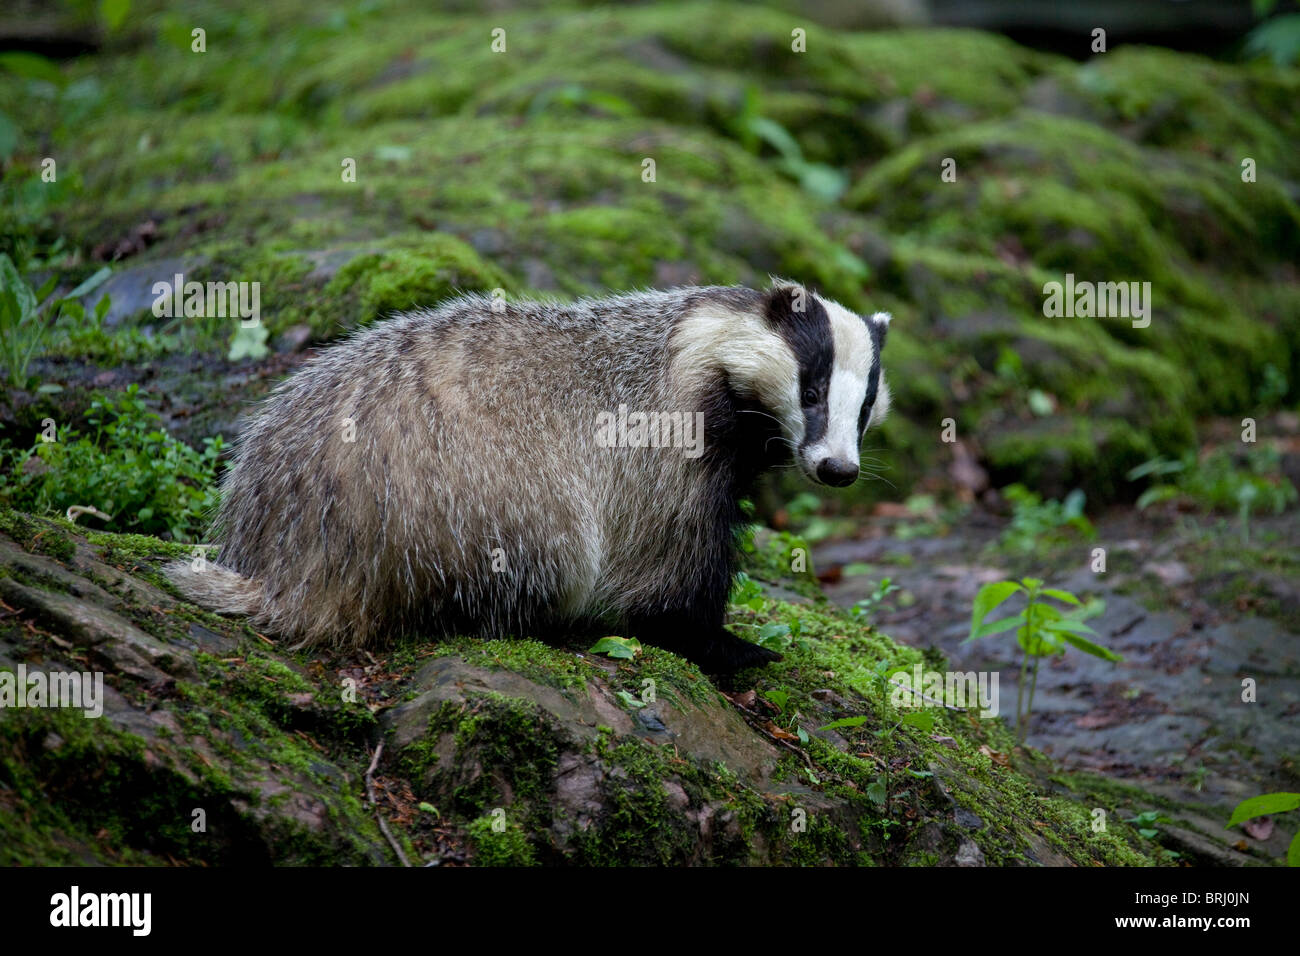 European badger (Meles meles) on rock in forest, Sweden Stock Photo